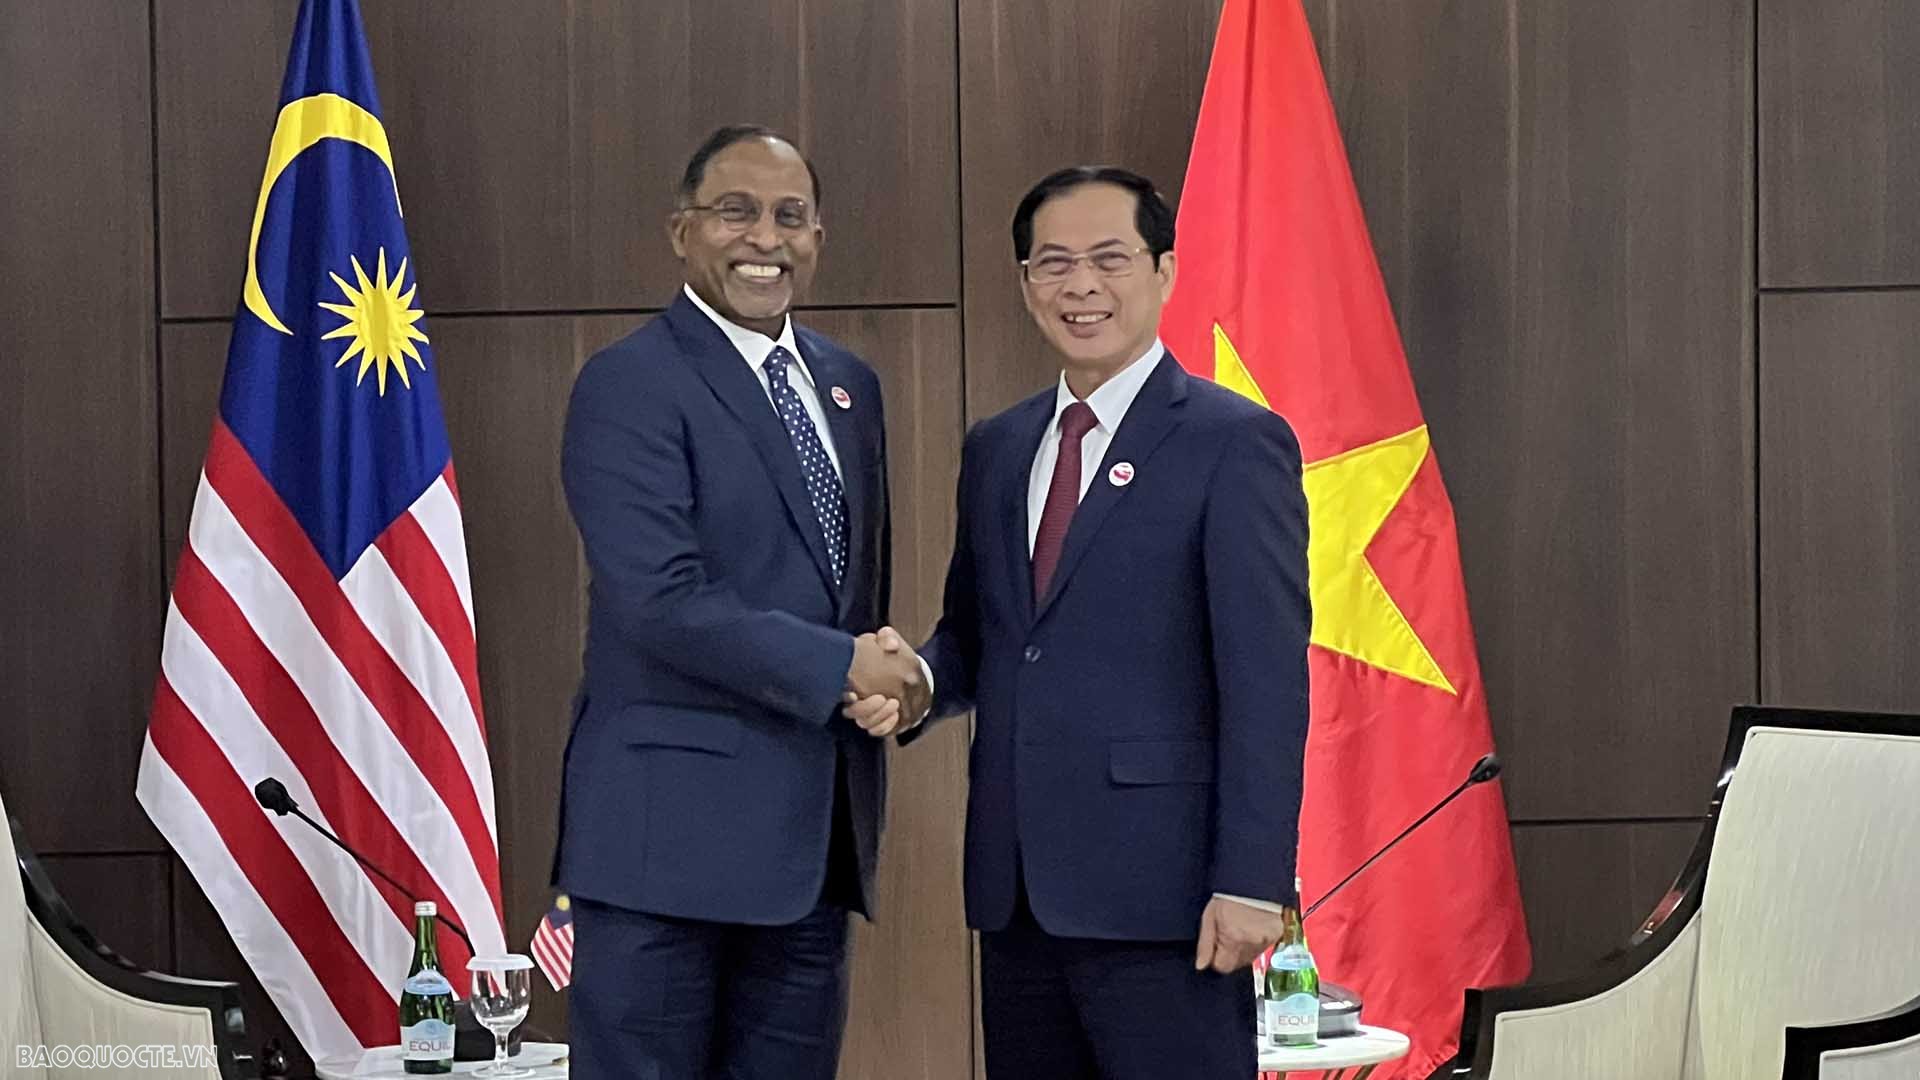 Bộ trưởng Ngoại giao Bùi Thanh Sơn gặp Bộ trưởng Ngoại giao Malaysia